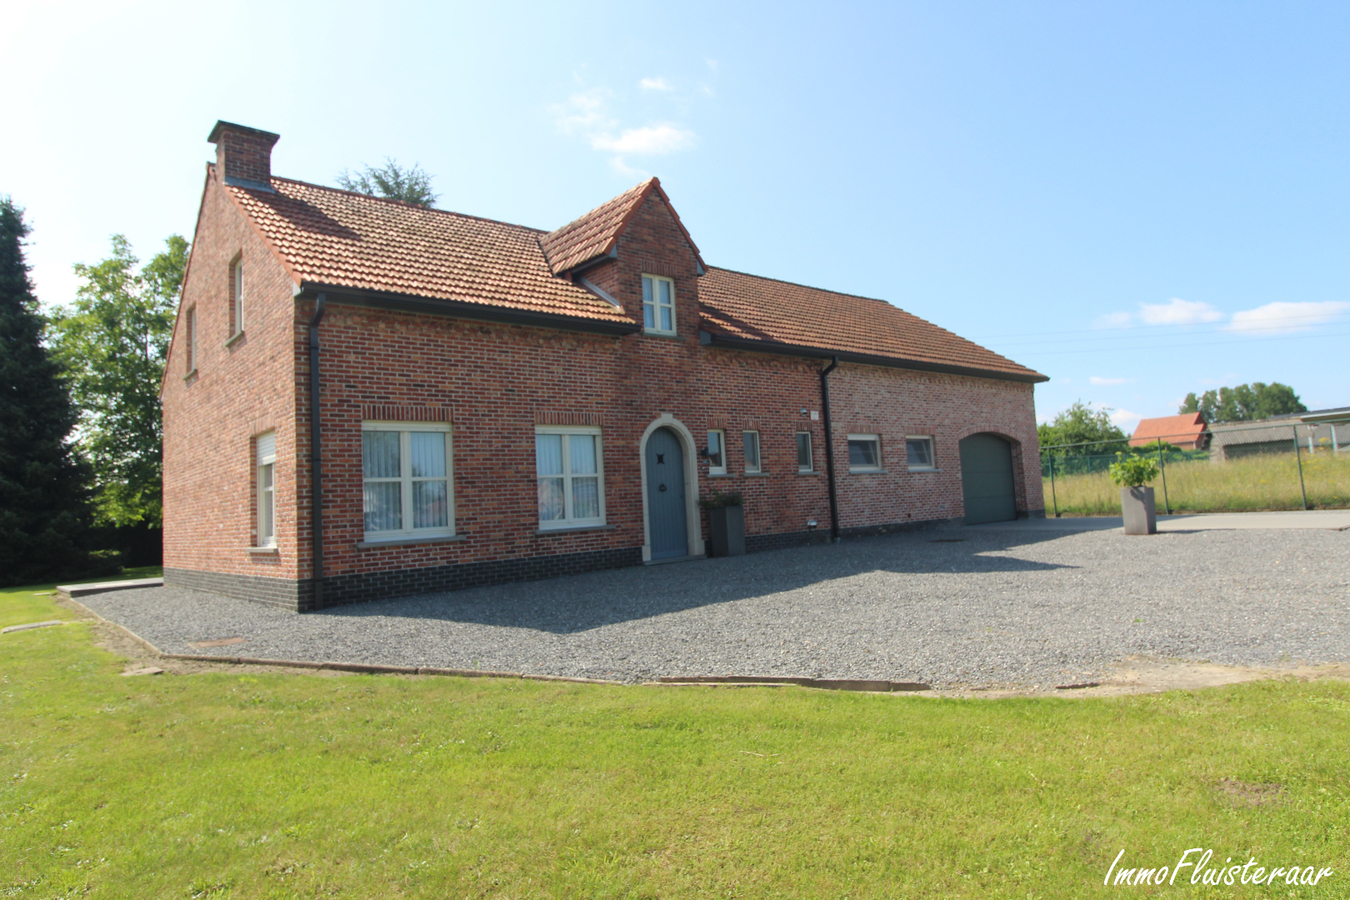 Property sold in Begijnendijk